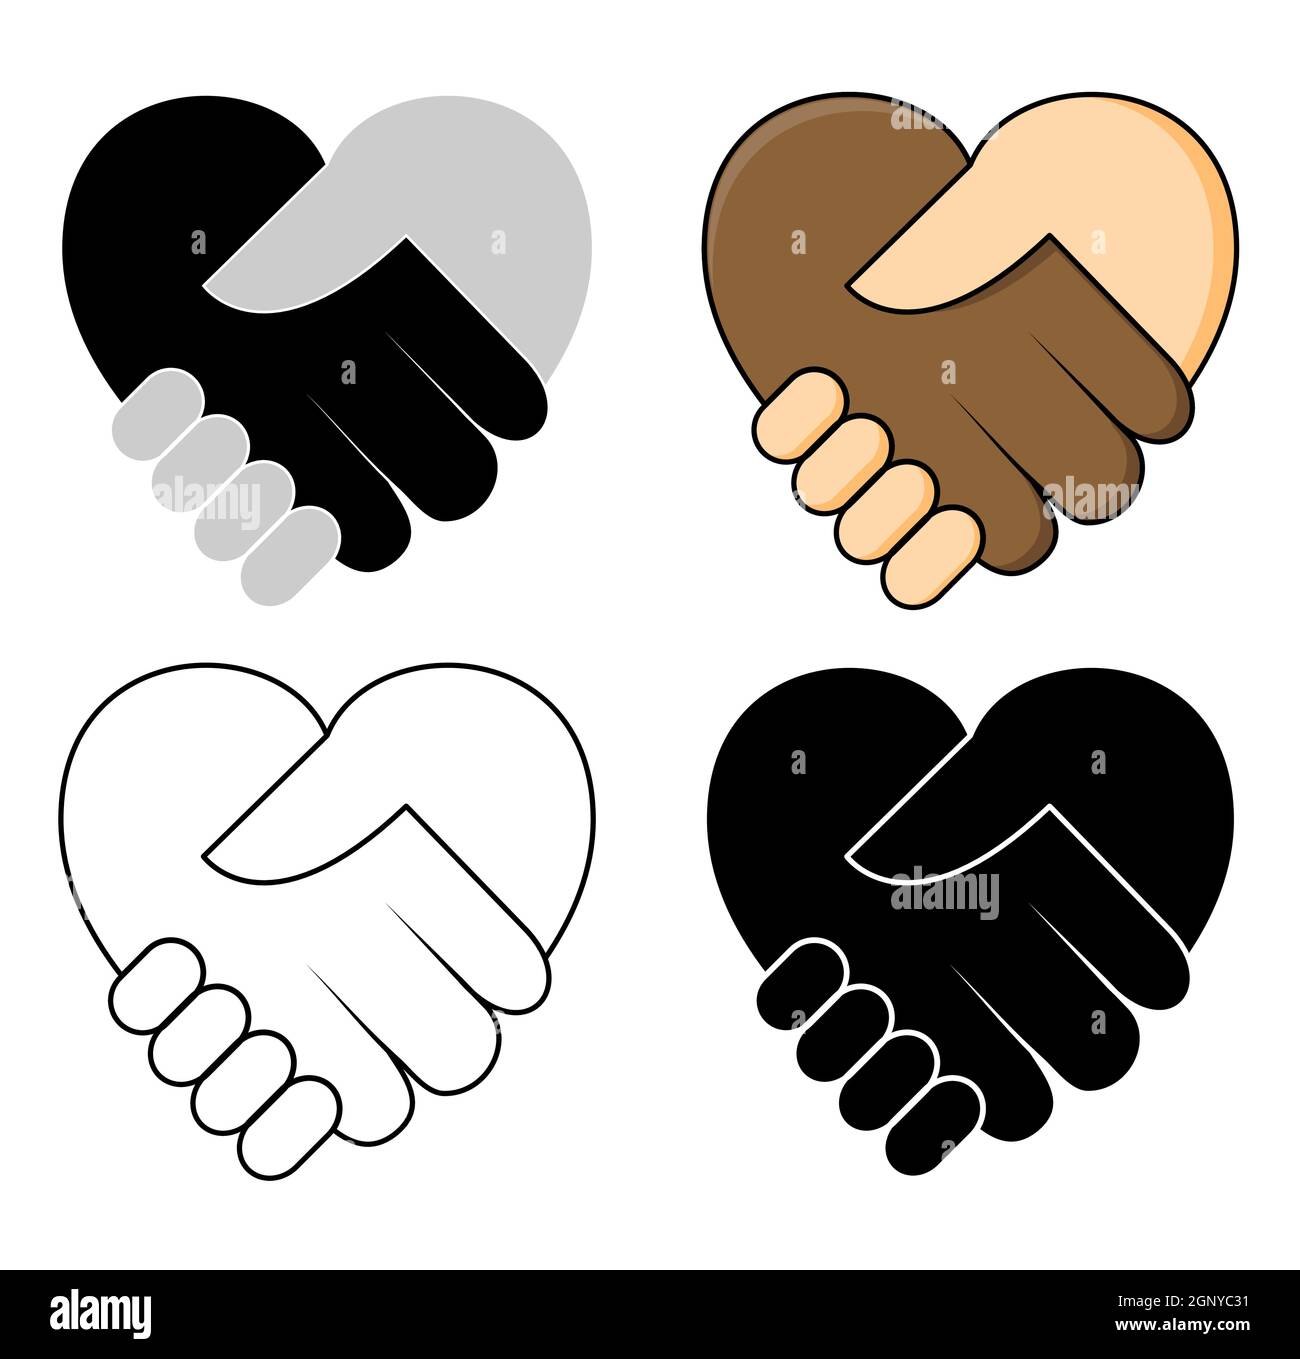 Agitar la mano en forma de corazón - No hay racismo concepto icono conjunto. Dos manos piel oscura y limpia en un apretón de manos. Ideal para el símbolo de la tolerancia o el trabajo en equipo entre diferentes etnias. Diseño vectorial. Ilustración del Vector